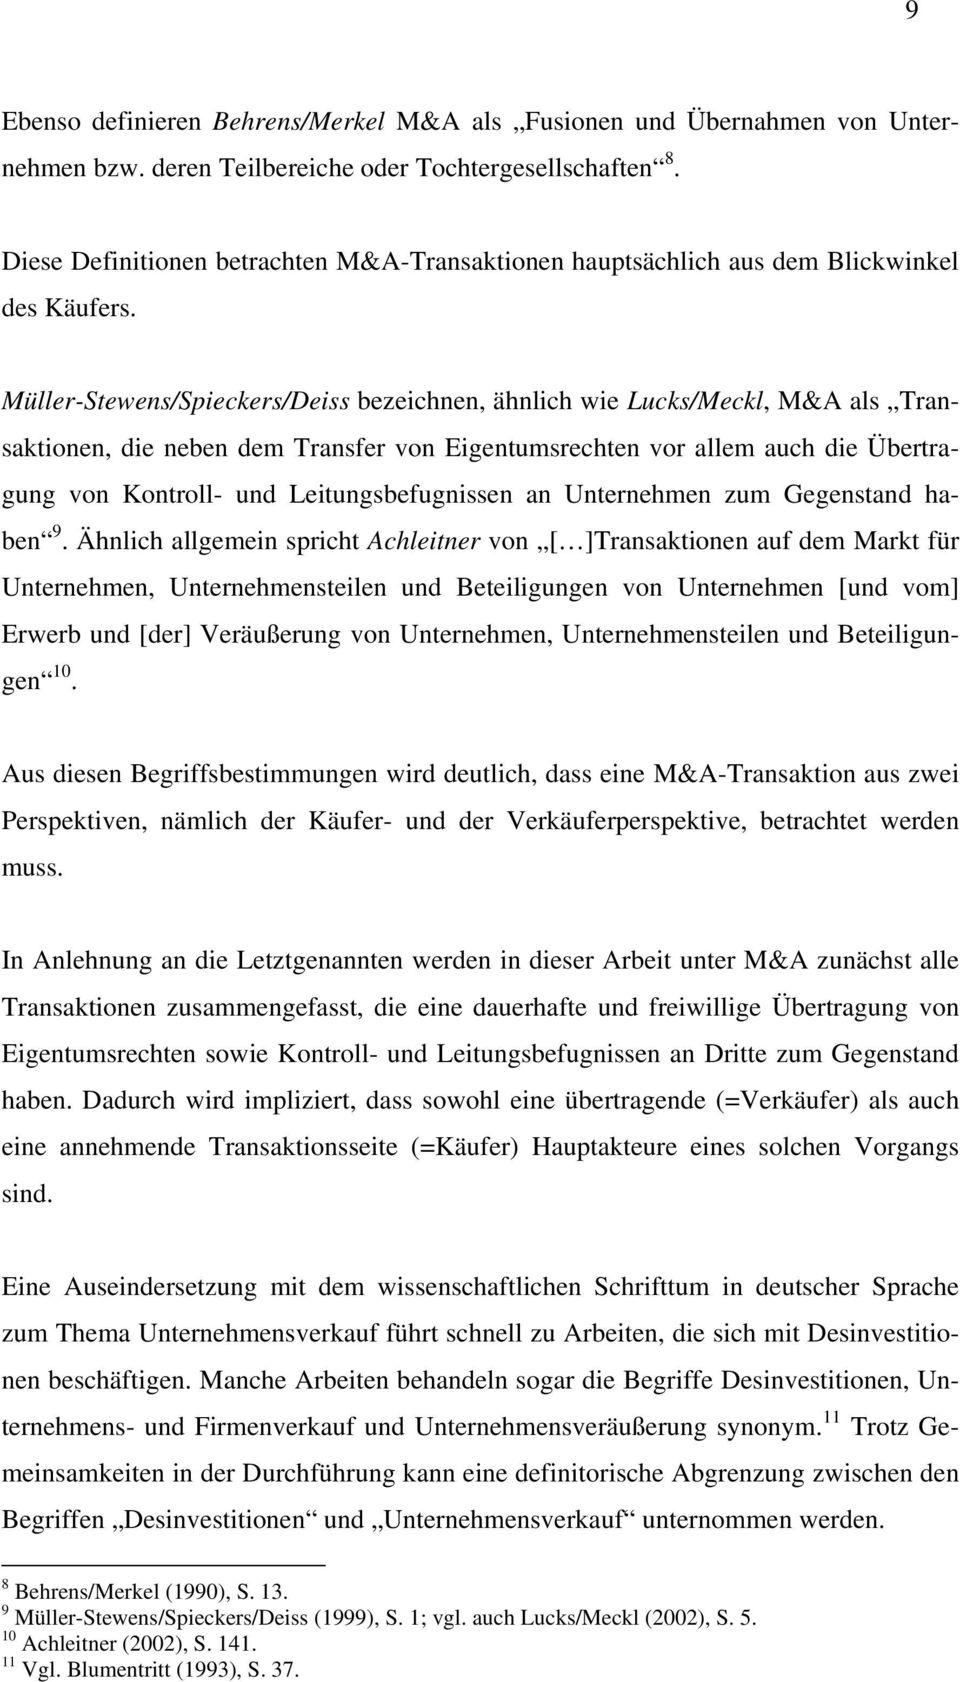 Müller-Stewens/Spieckers/Deiss bezeichnen, ähnlich wie Lucks/Meckl, M&A als Transaktionen, die neben dem Transfer von Eigentumsrechten vor allem auch die Übertragung von Kontroll- und